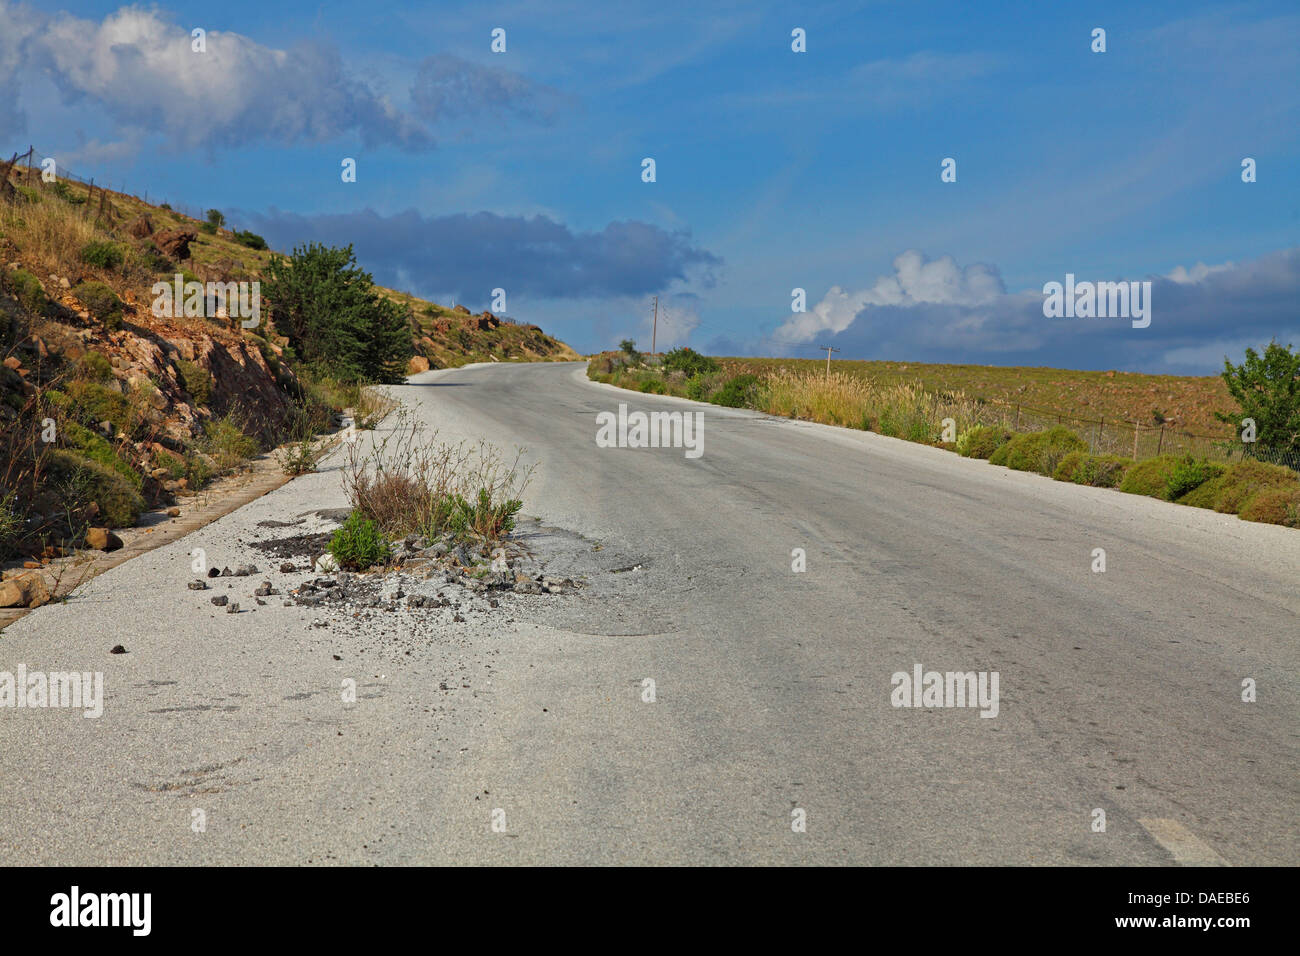 Strada di campagna con rottura di asfalto aperto, Grecia, Lesbo, Agra Foto Stock